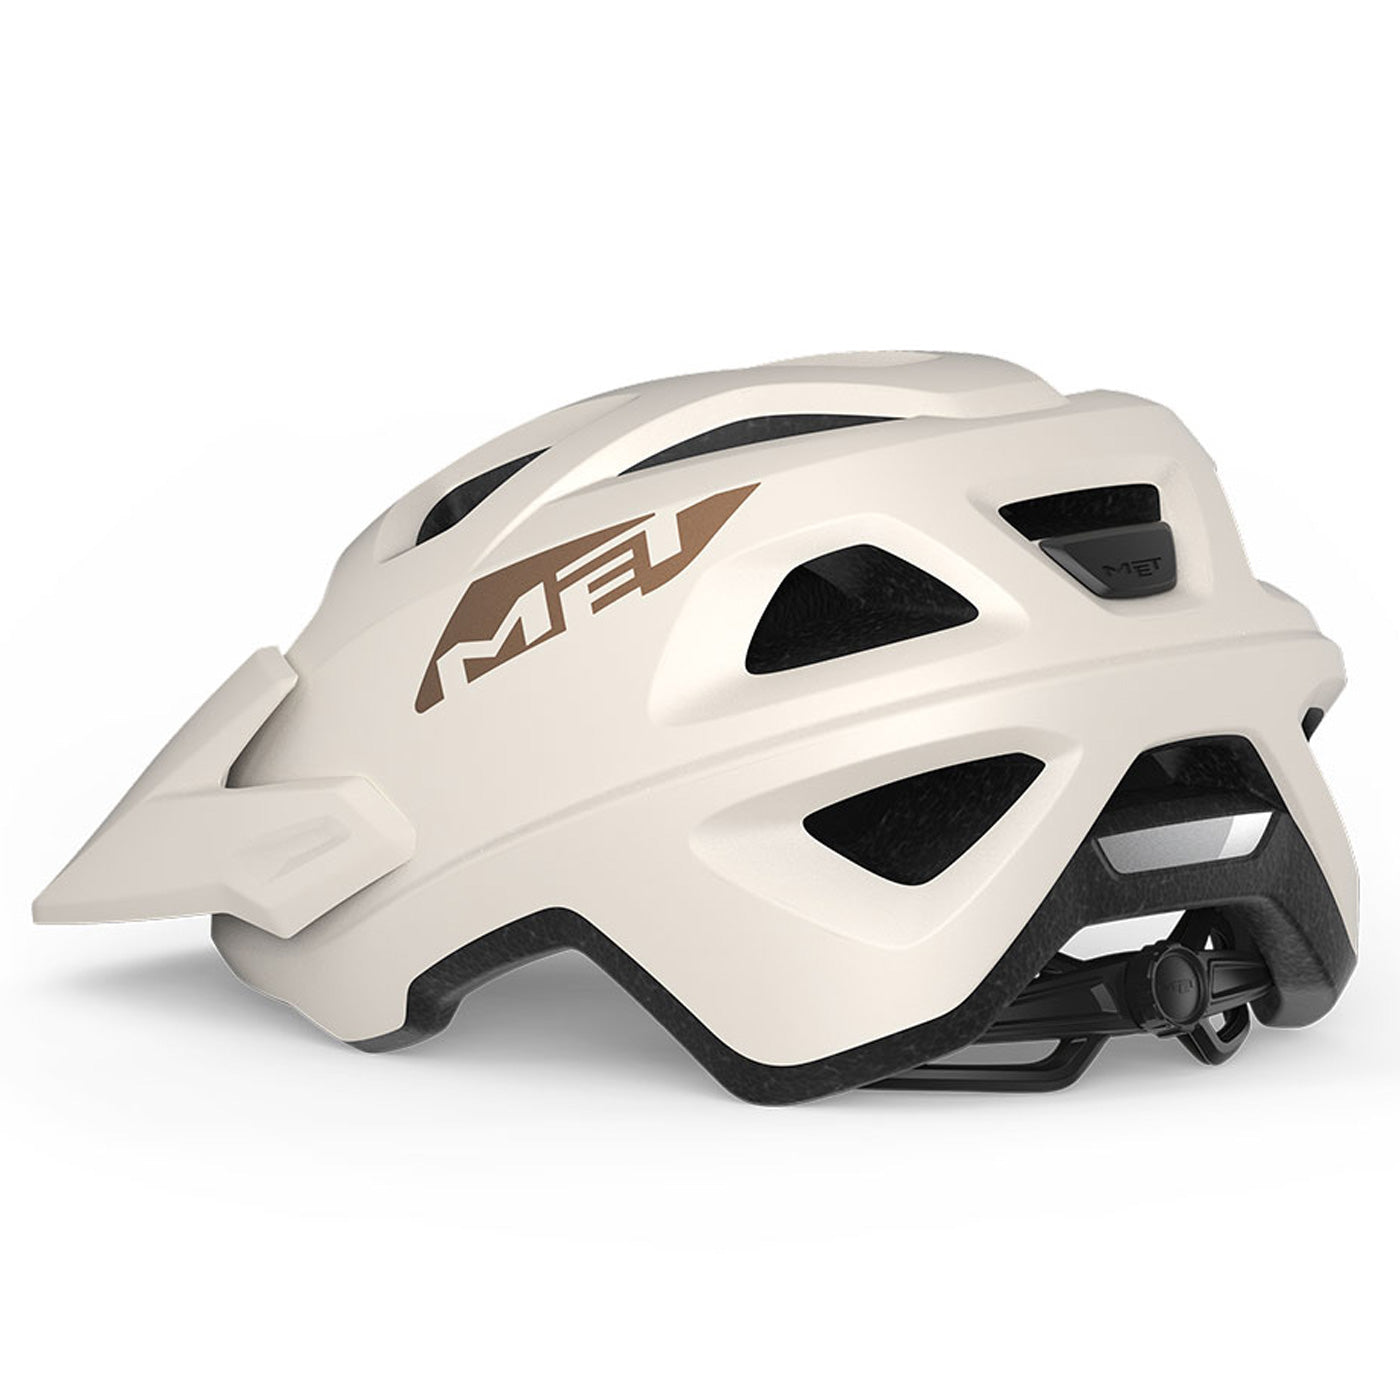 Met Echo helmet - White – All4cycling